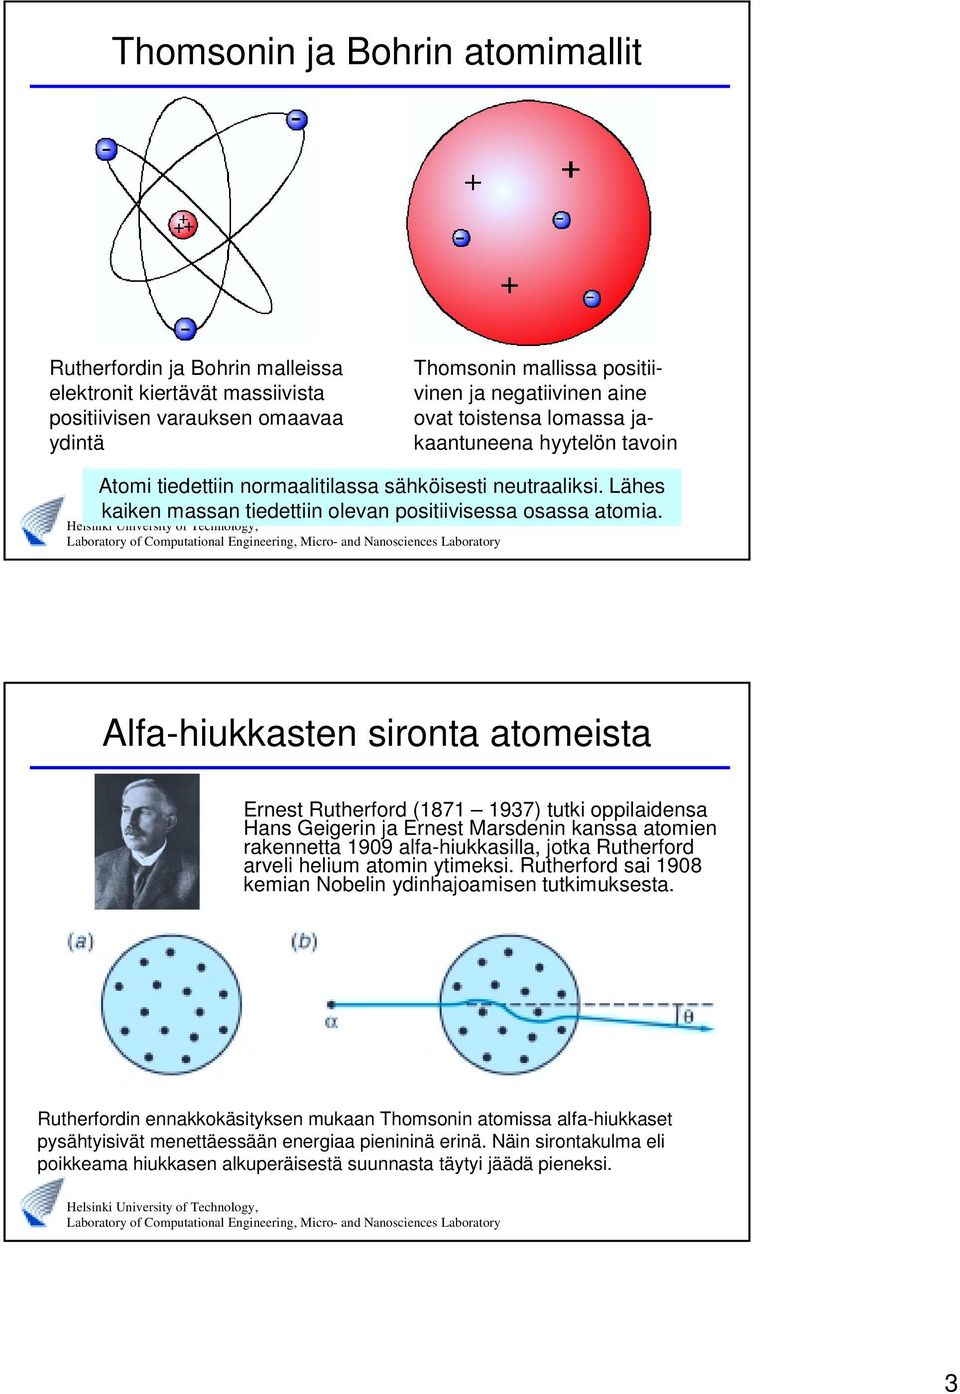 Afa-hiukkastn sironta atomista Ernst Ruthrford (1871 1937) tutki oppiaidnsa Hans Gigrin ja Ernst Marsdnin kanssa atomin raknntta 1909 afa-hiukkasia, jotka Ruthrford arvi hium atomin ytimksi.